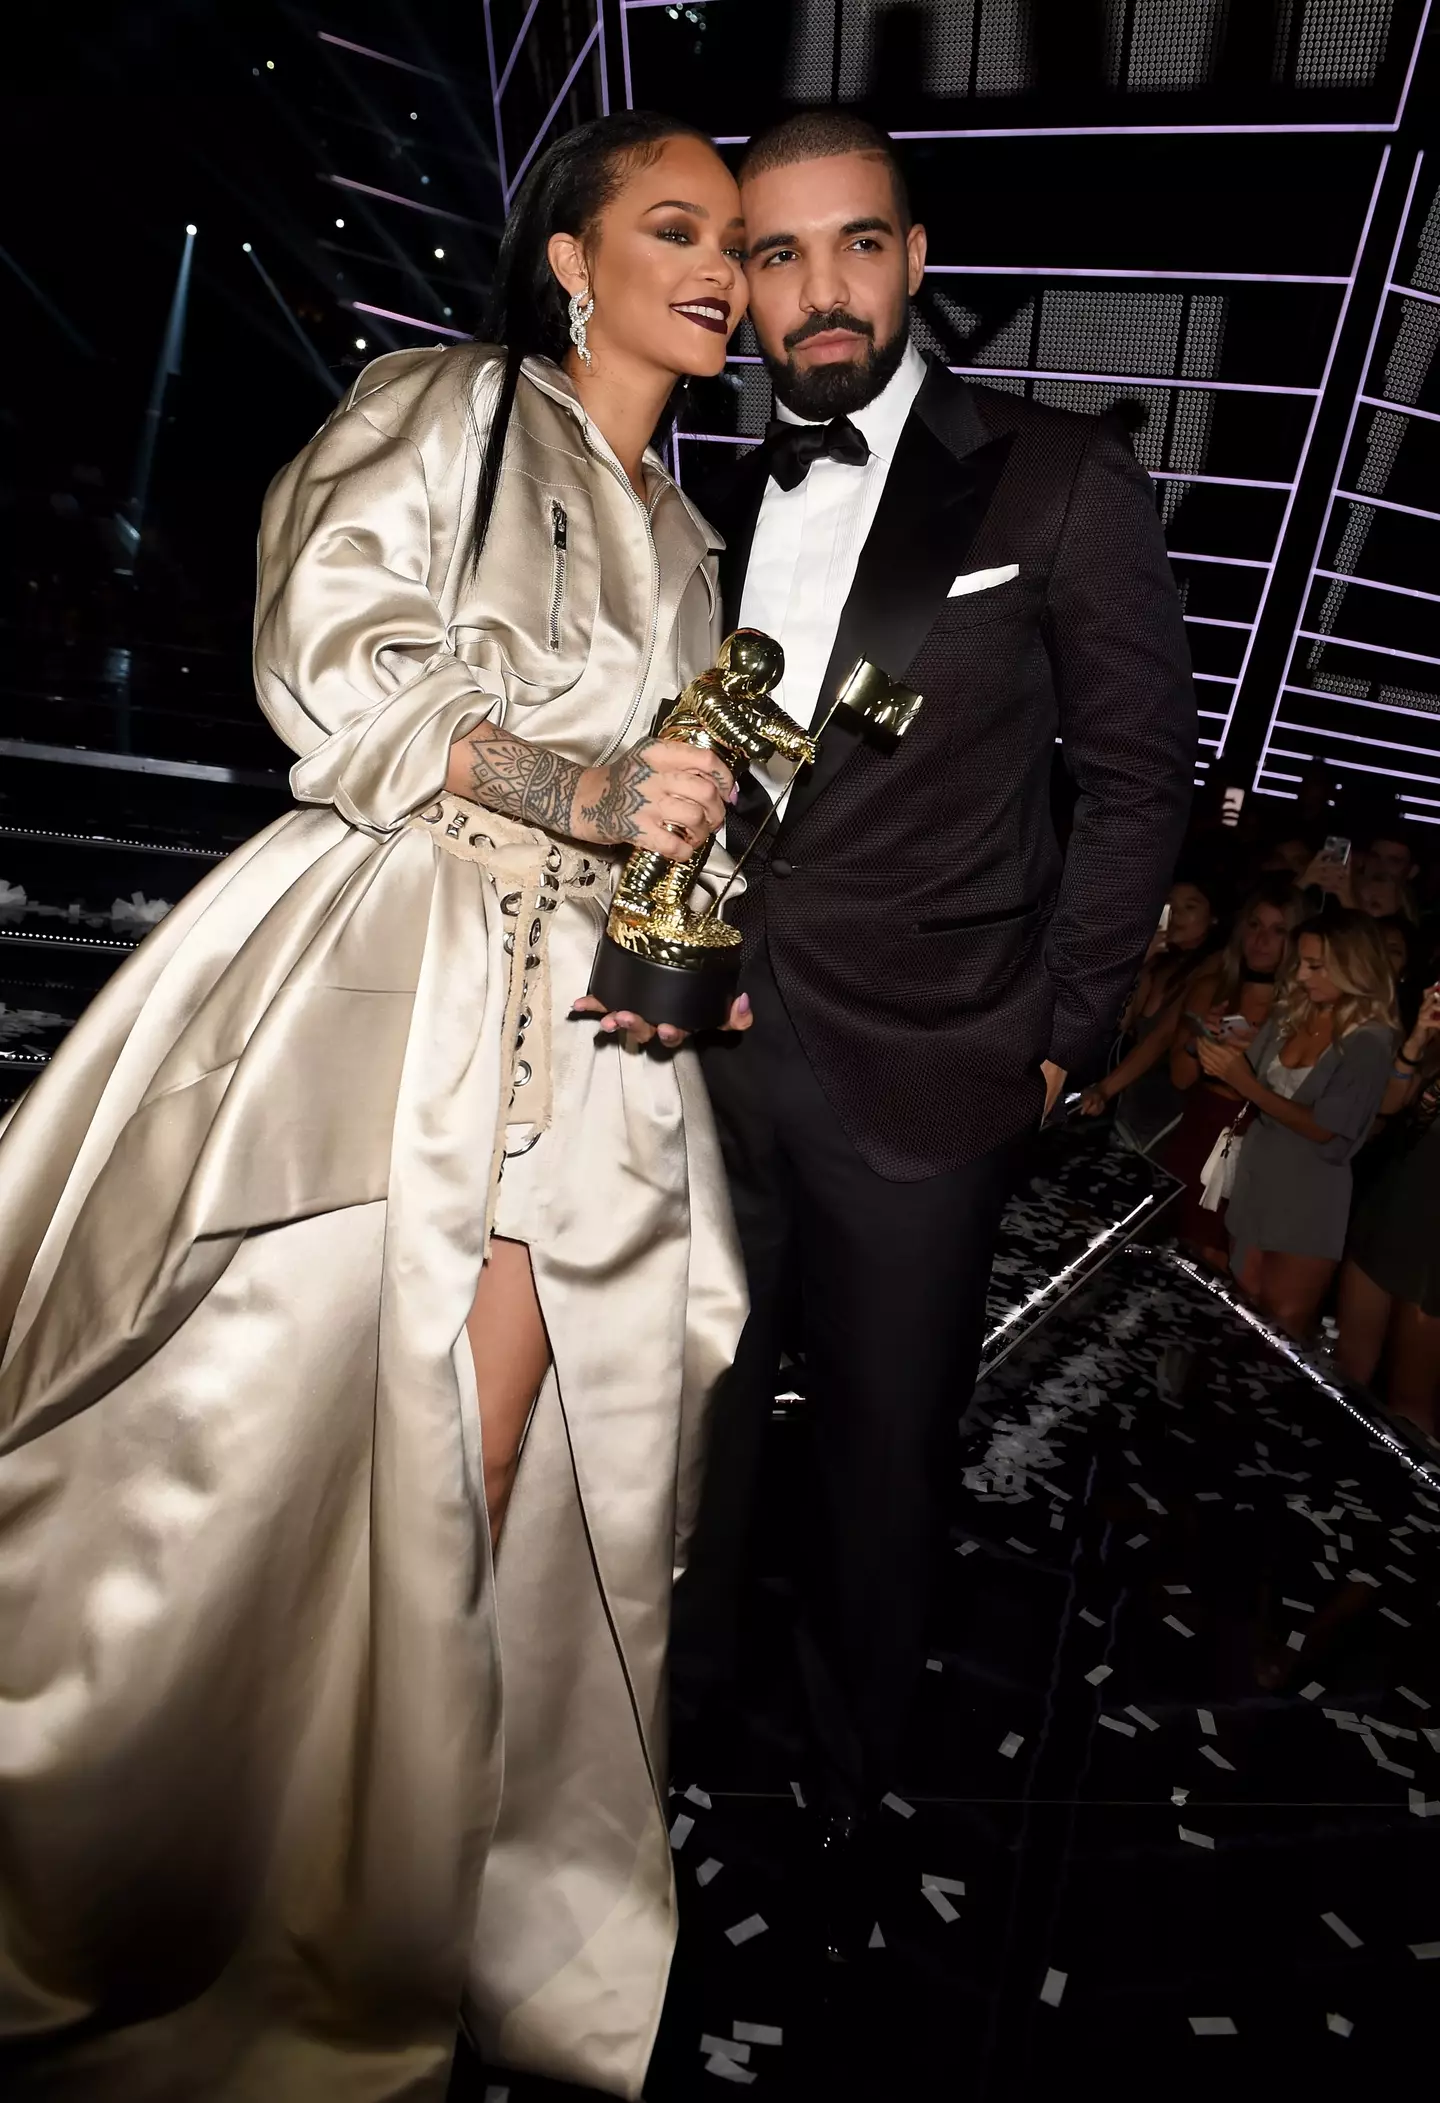 Drake and Rihanna previously dated.